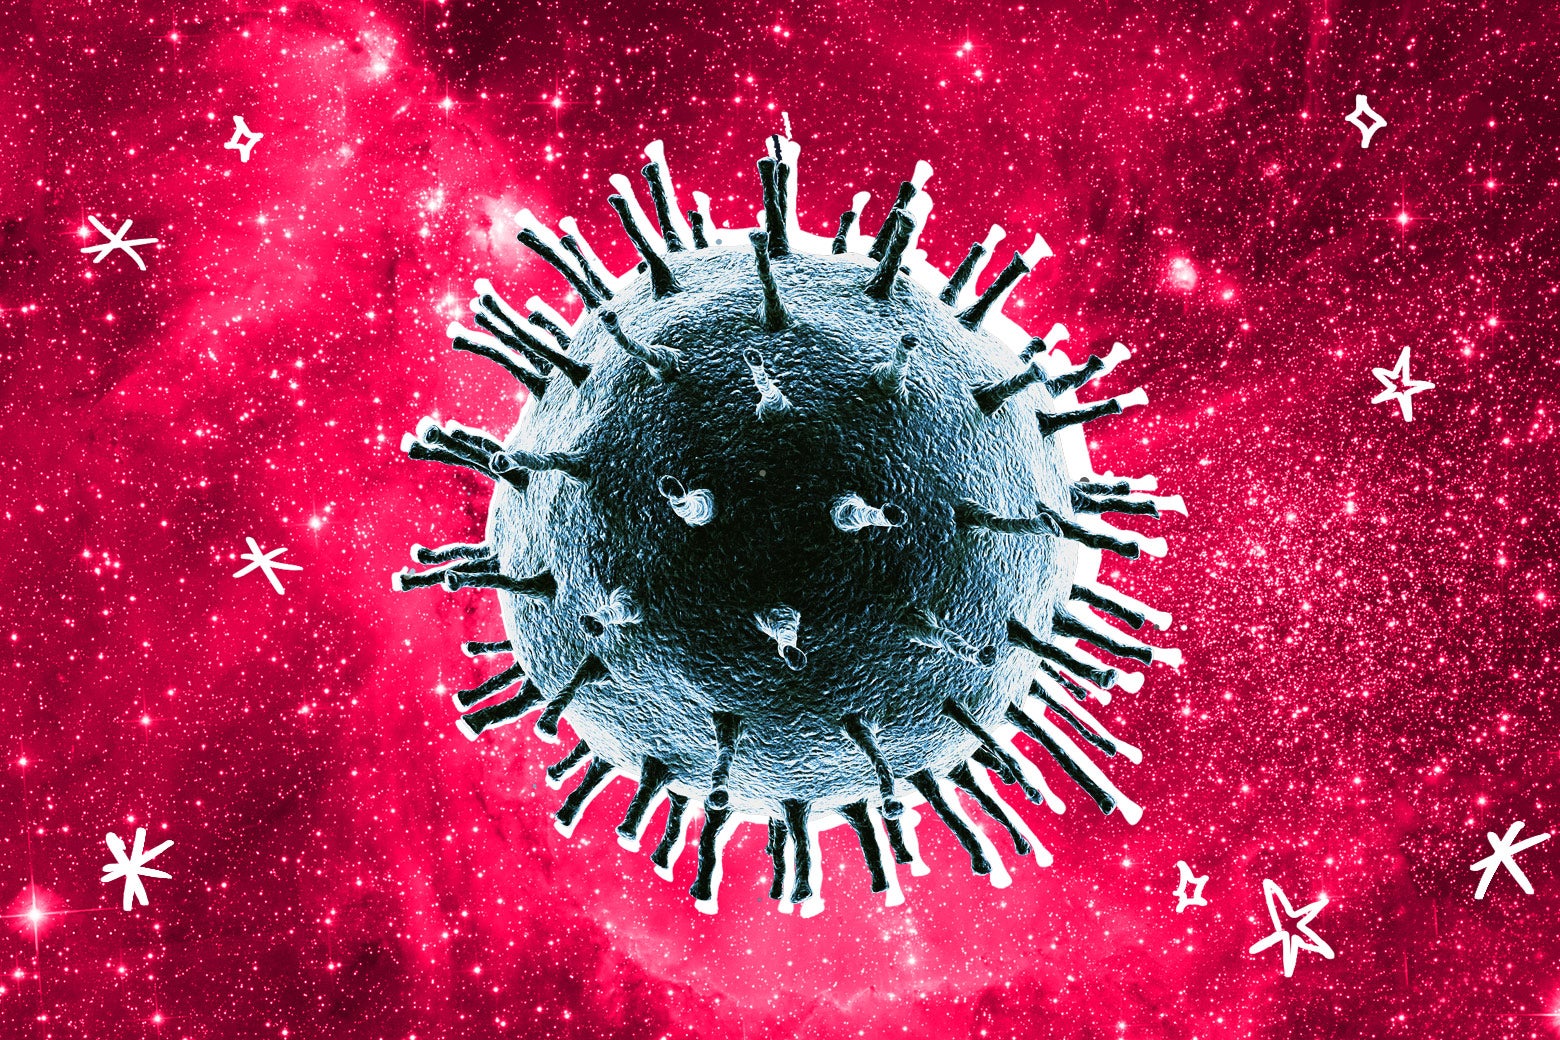 Viruses in space